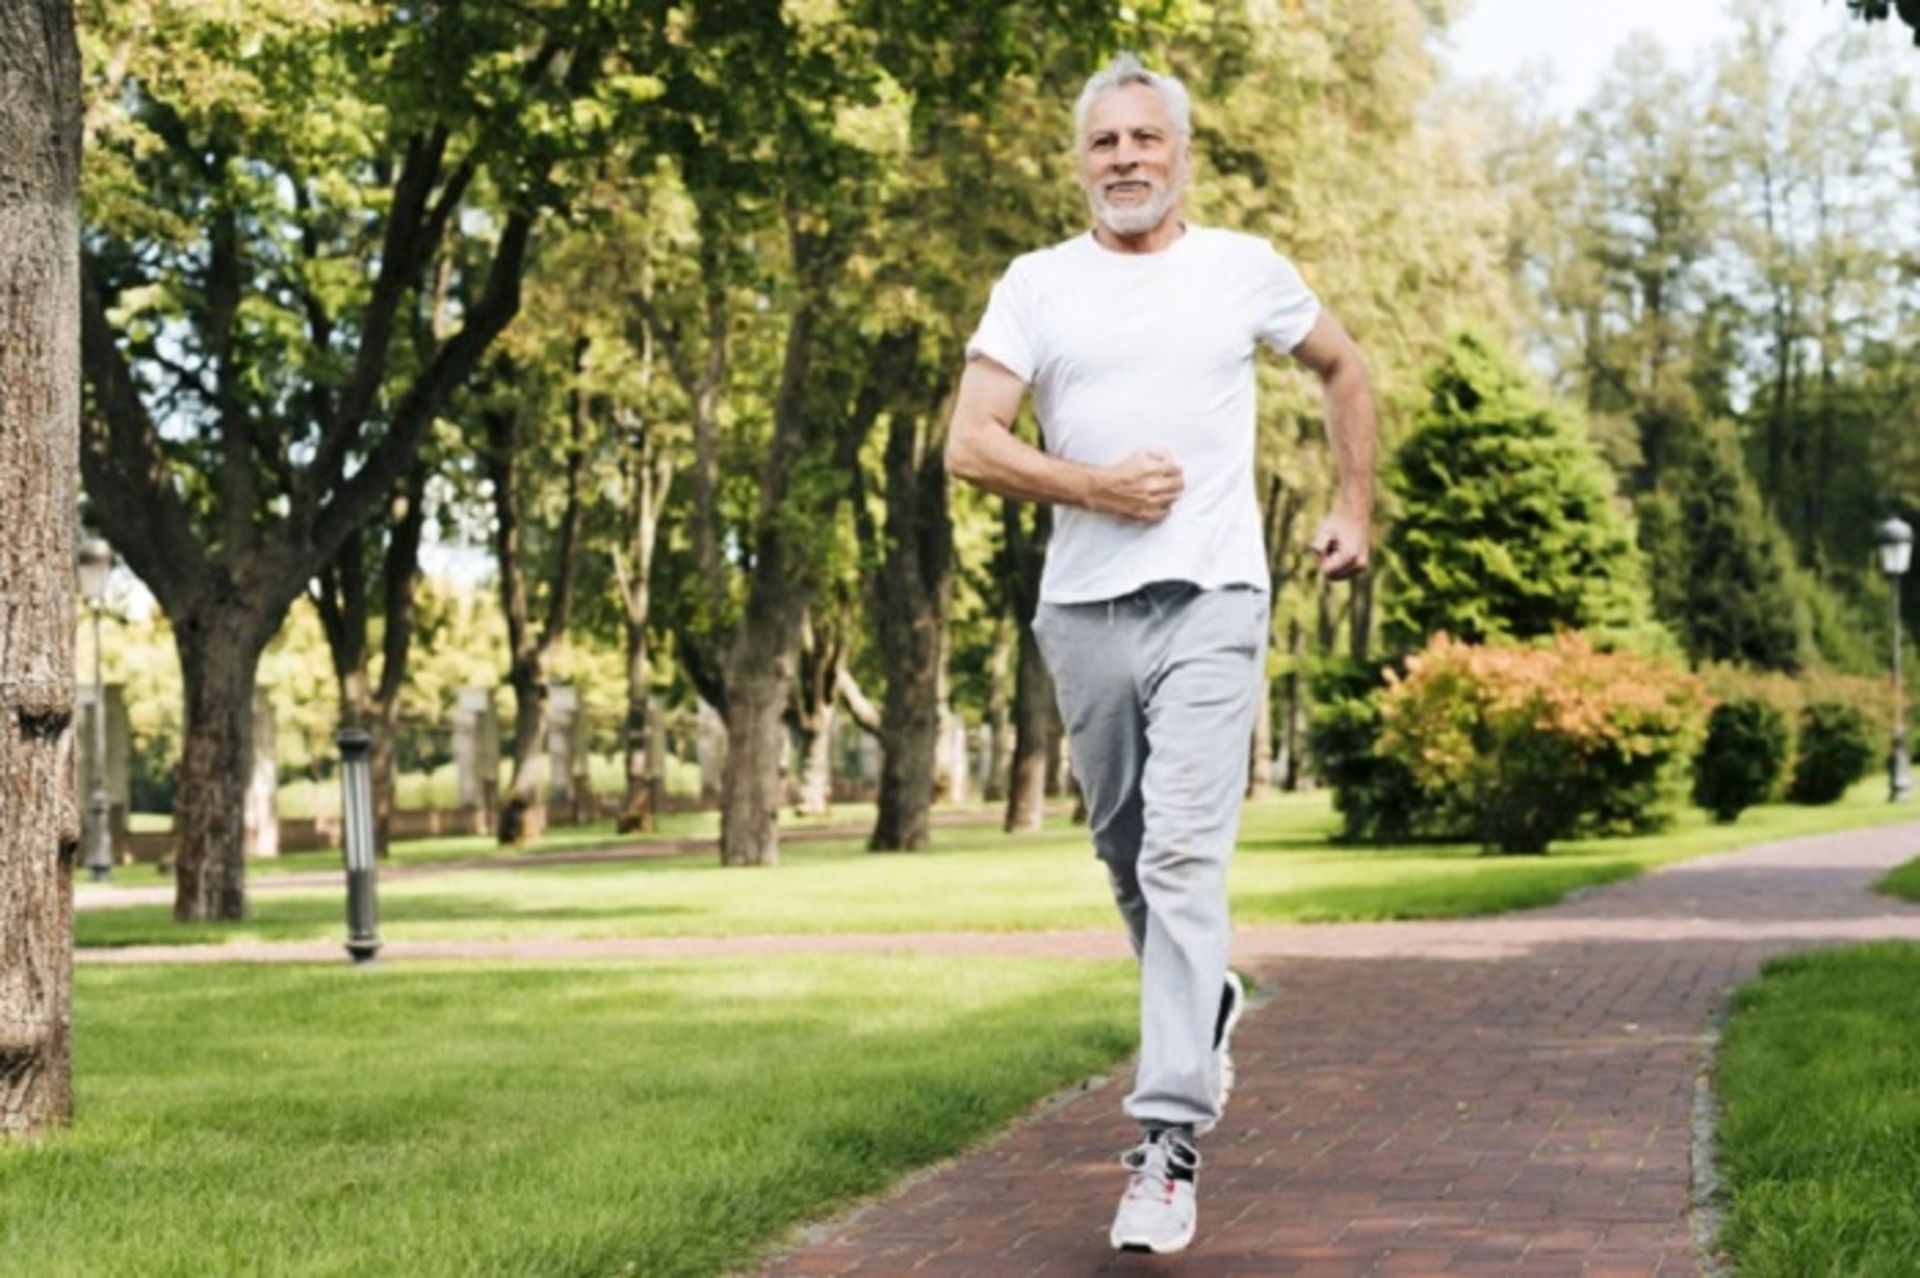 مرجع متخصصين ايران مردي كه در حال دويدن و ورزش كردن است